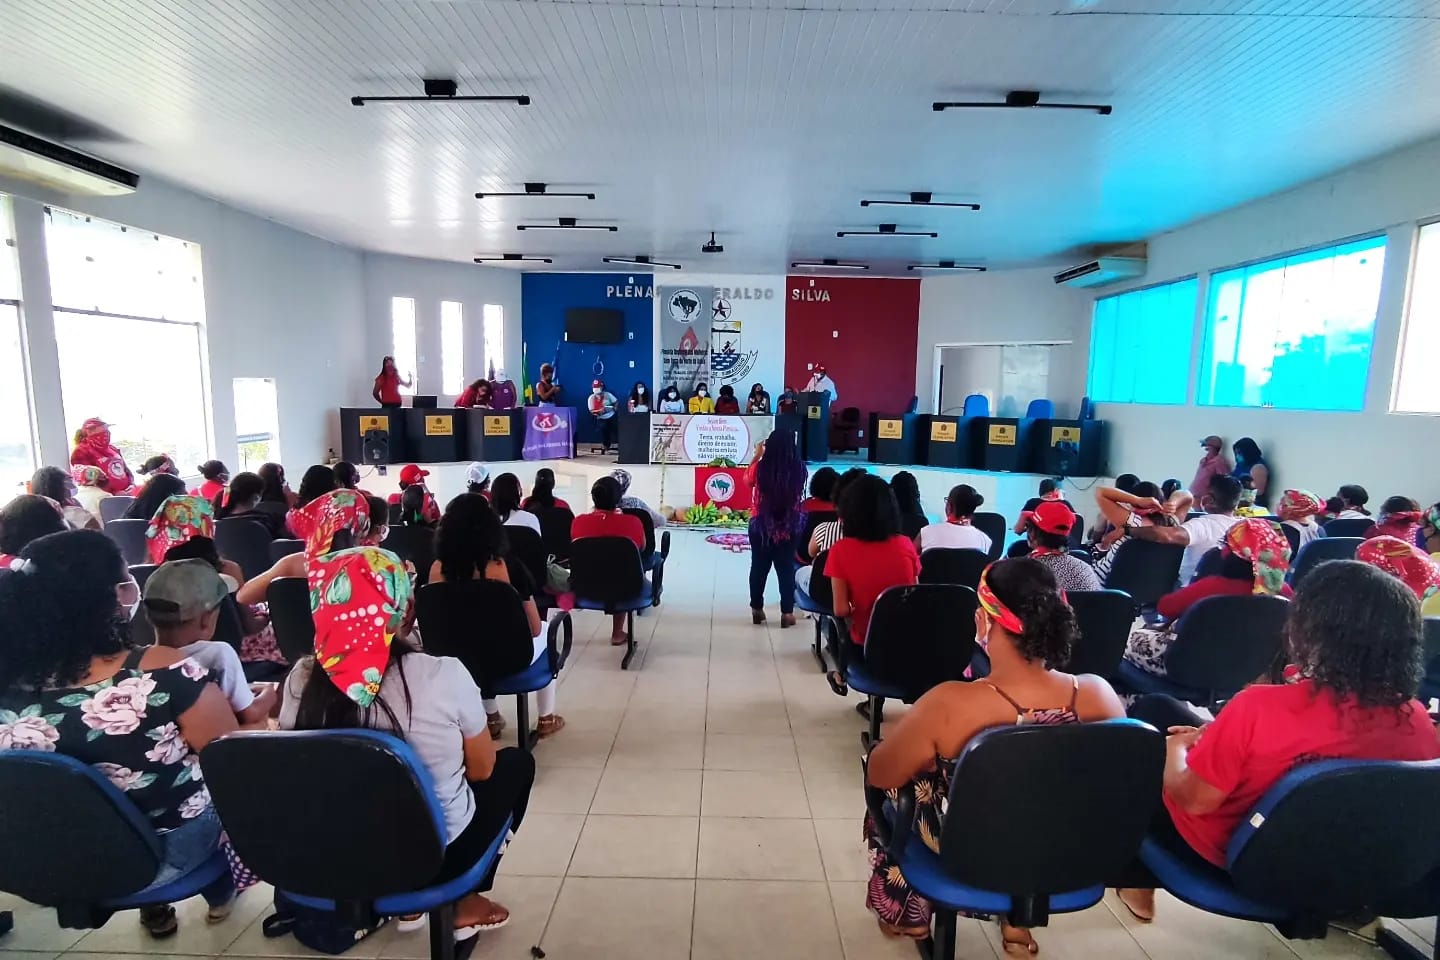 Plenária Regional das Mulheres Sem Terra na regional Norte do MST na Bahia